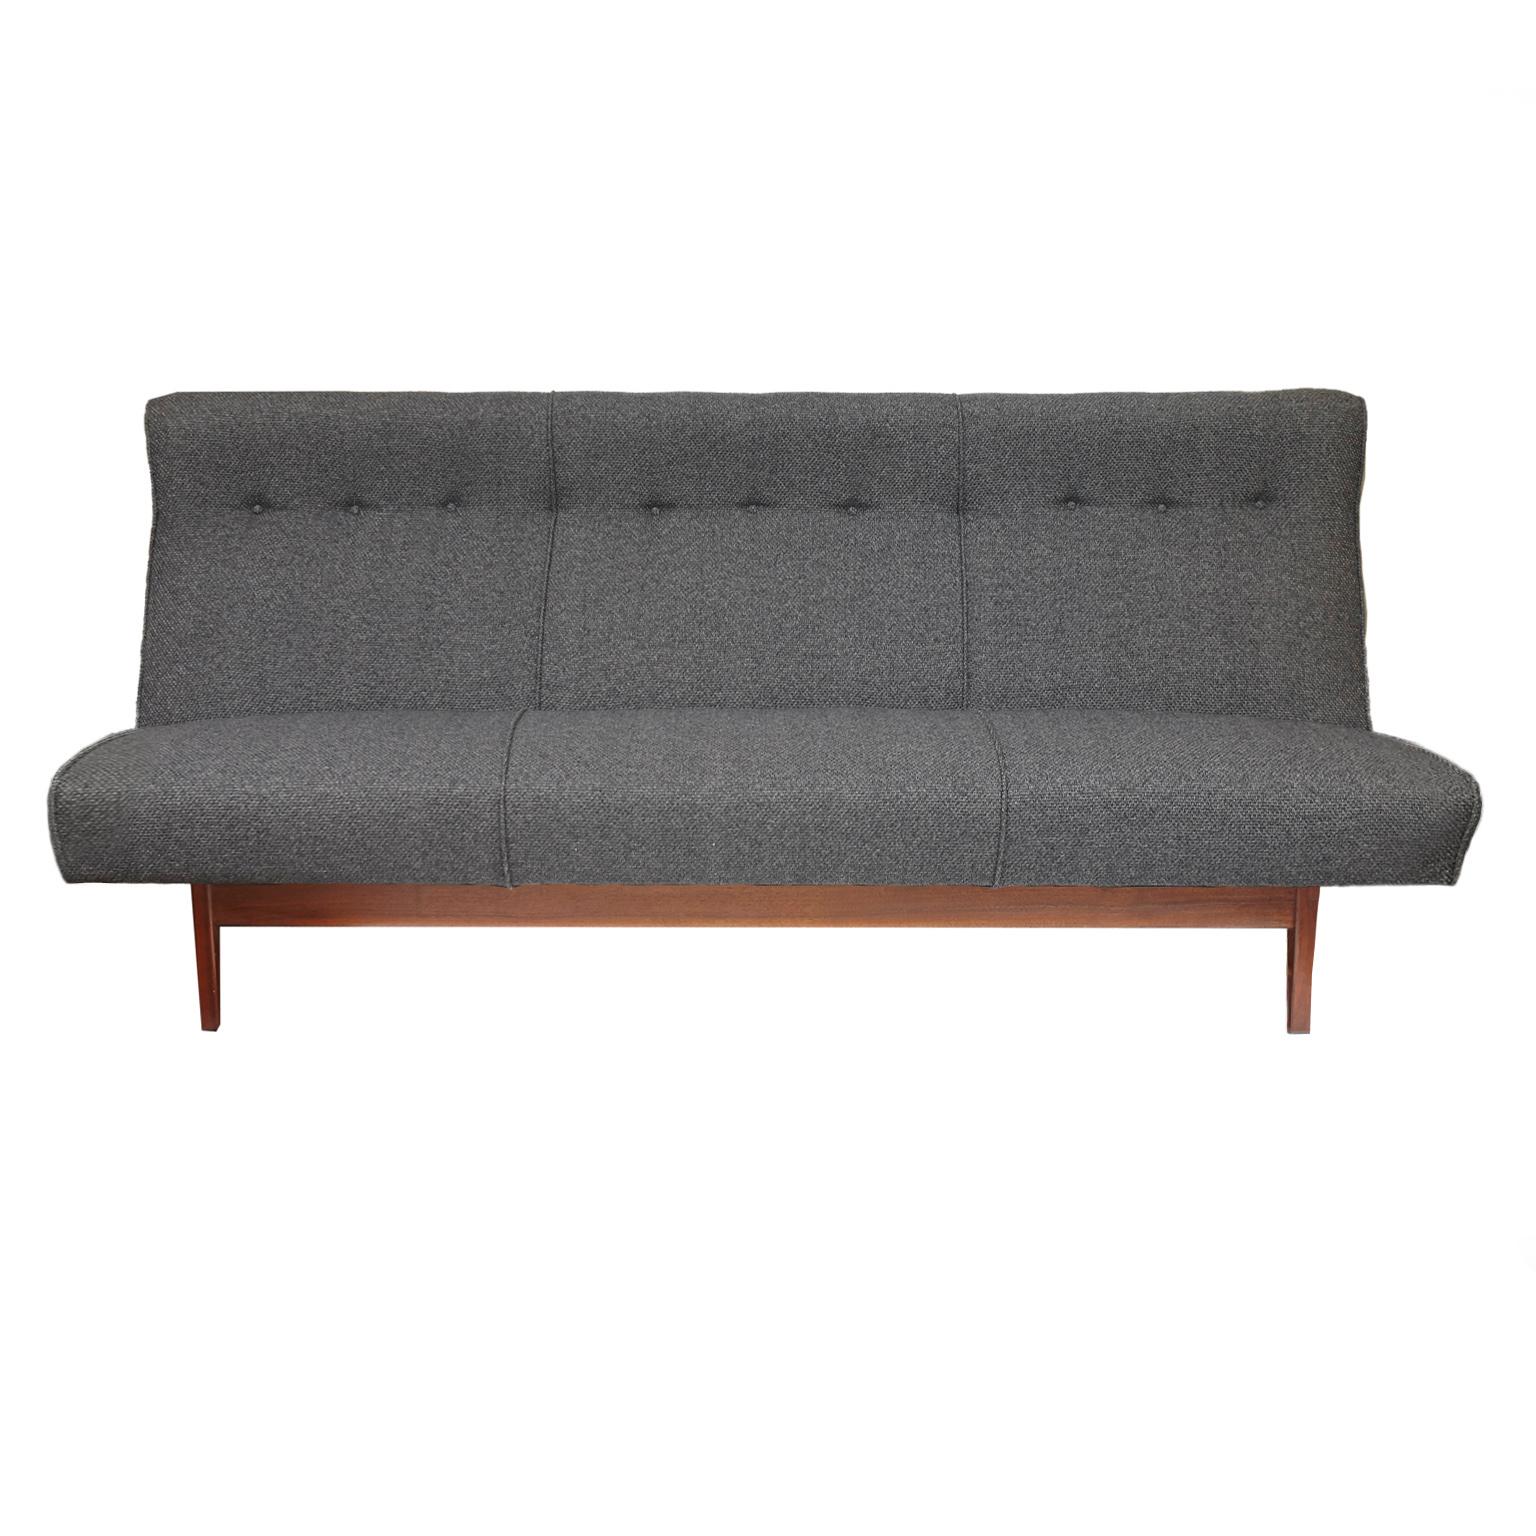 Jens Risom Charcoal Grey Sofa and Matching Love Seat Model U251 7